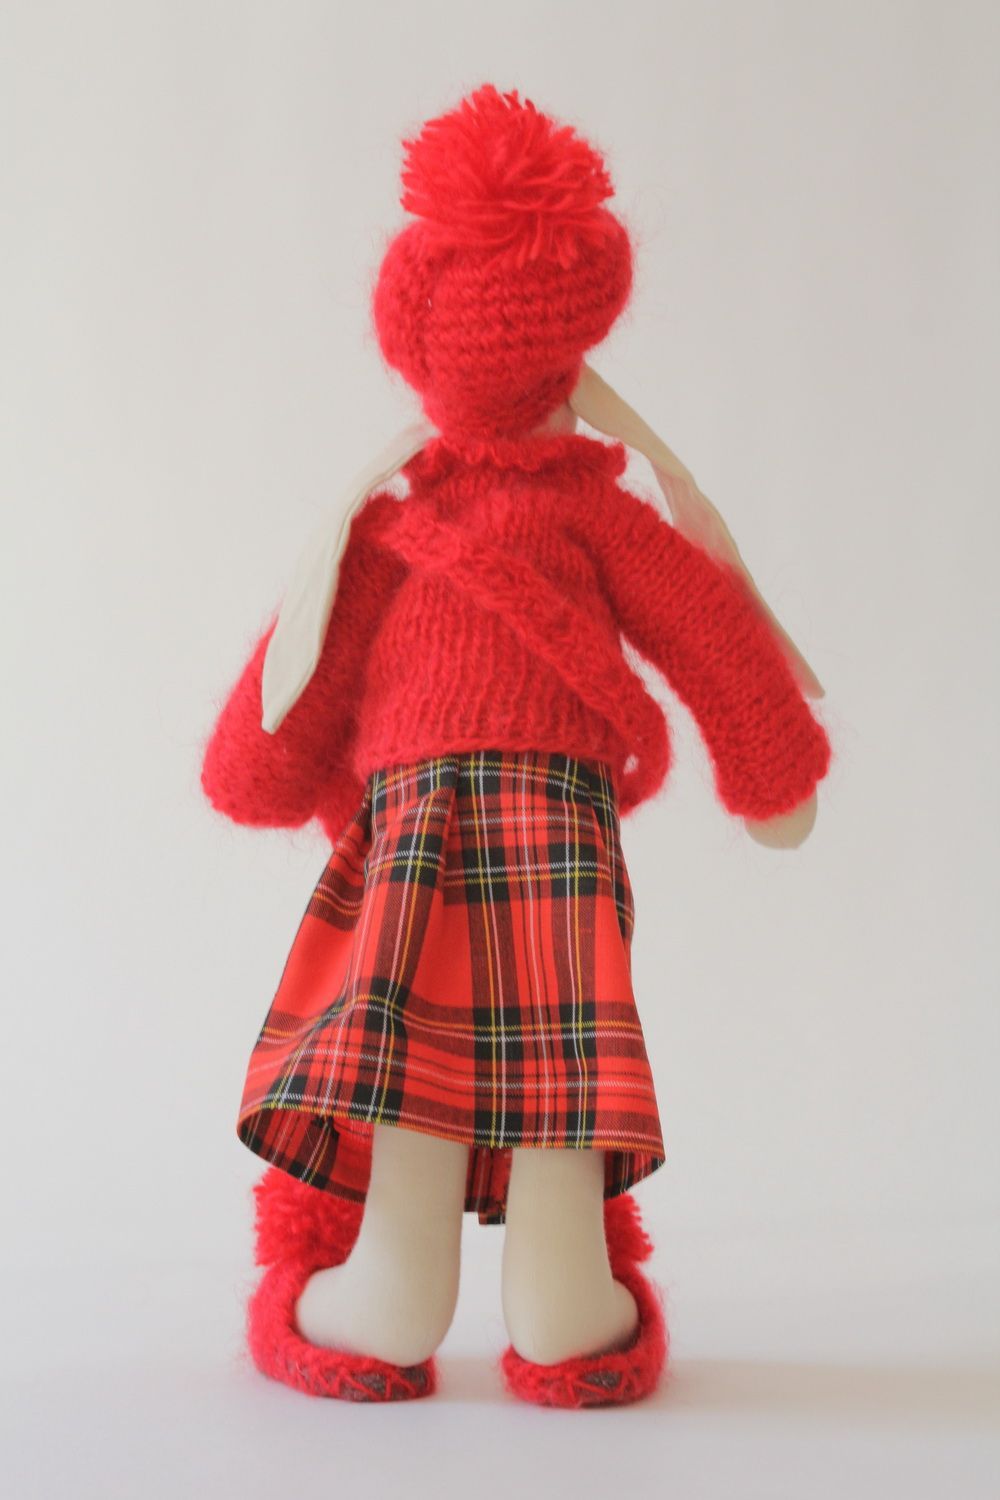 Textil Hase in schottischer Kleidung foto 2